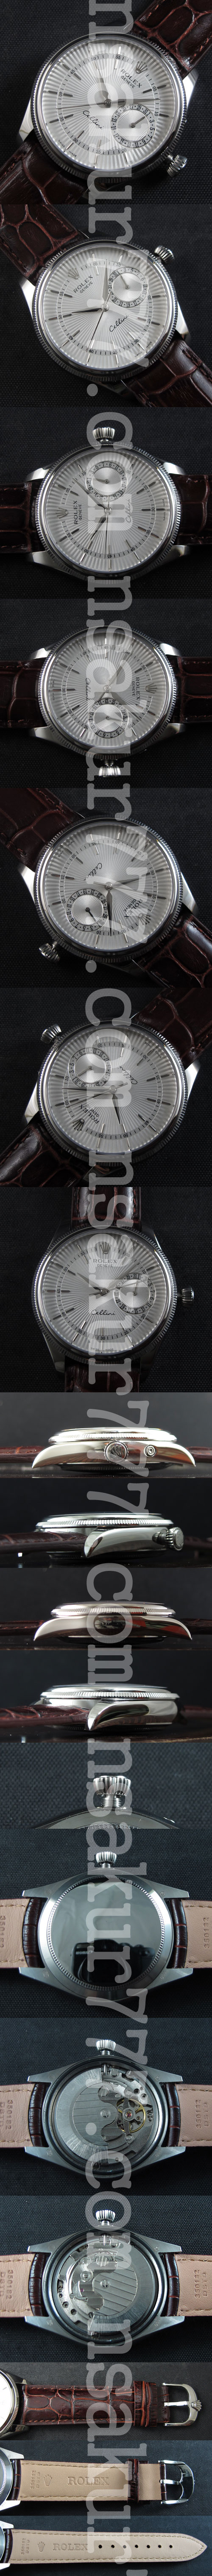 紳士腕時計ロレックスチェリーニ(文字盤デイト表示)